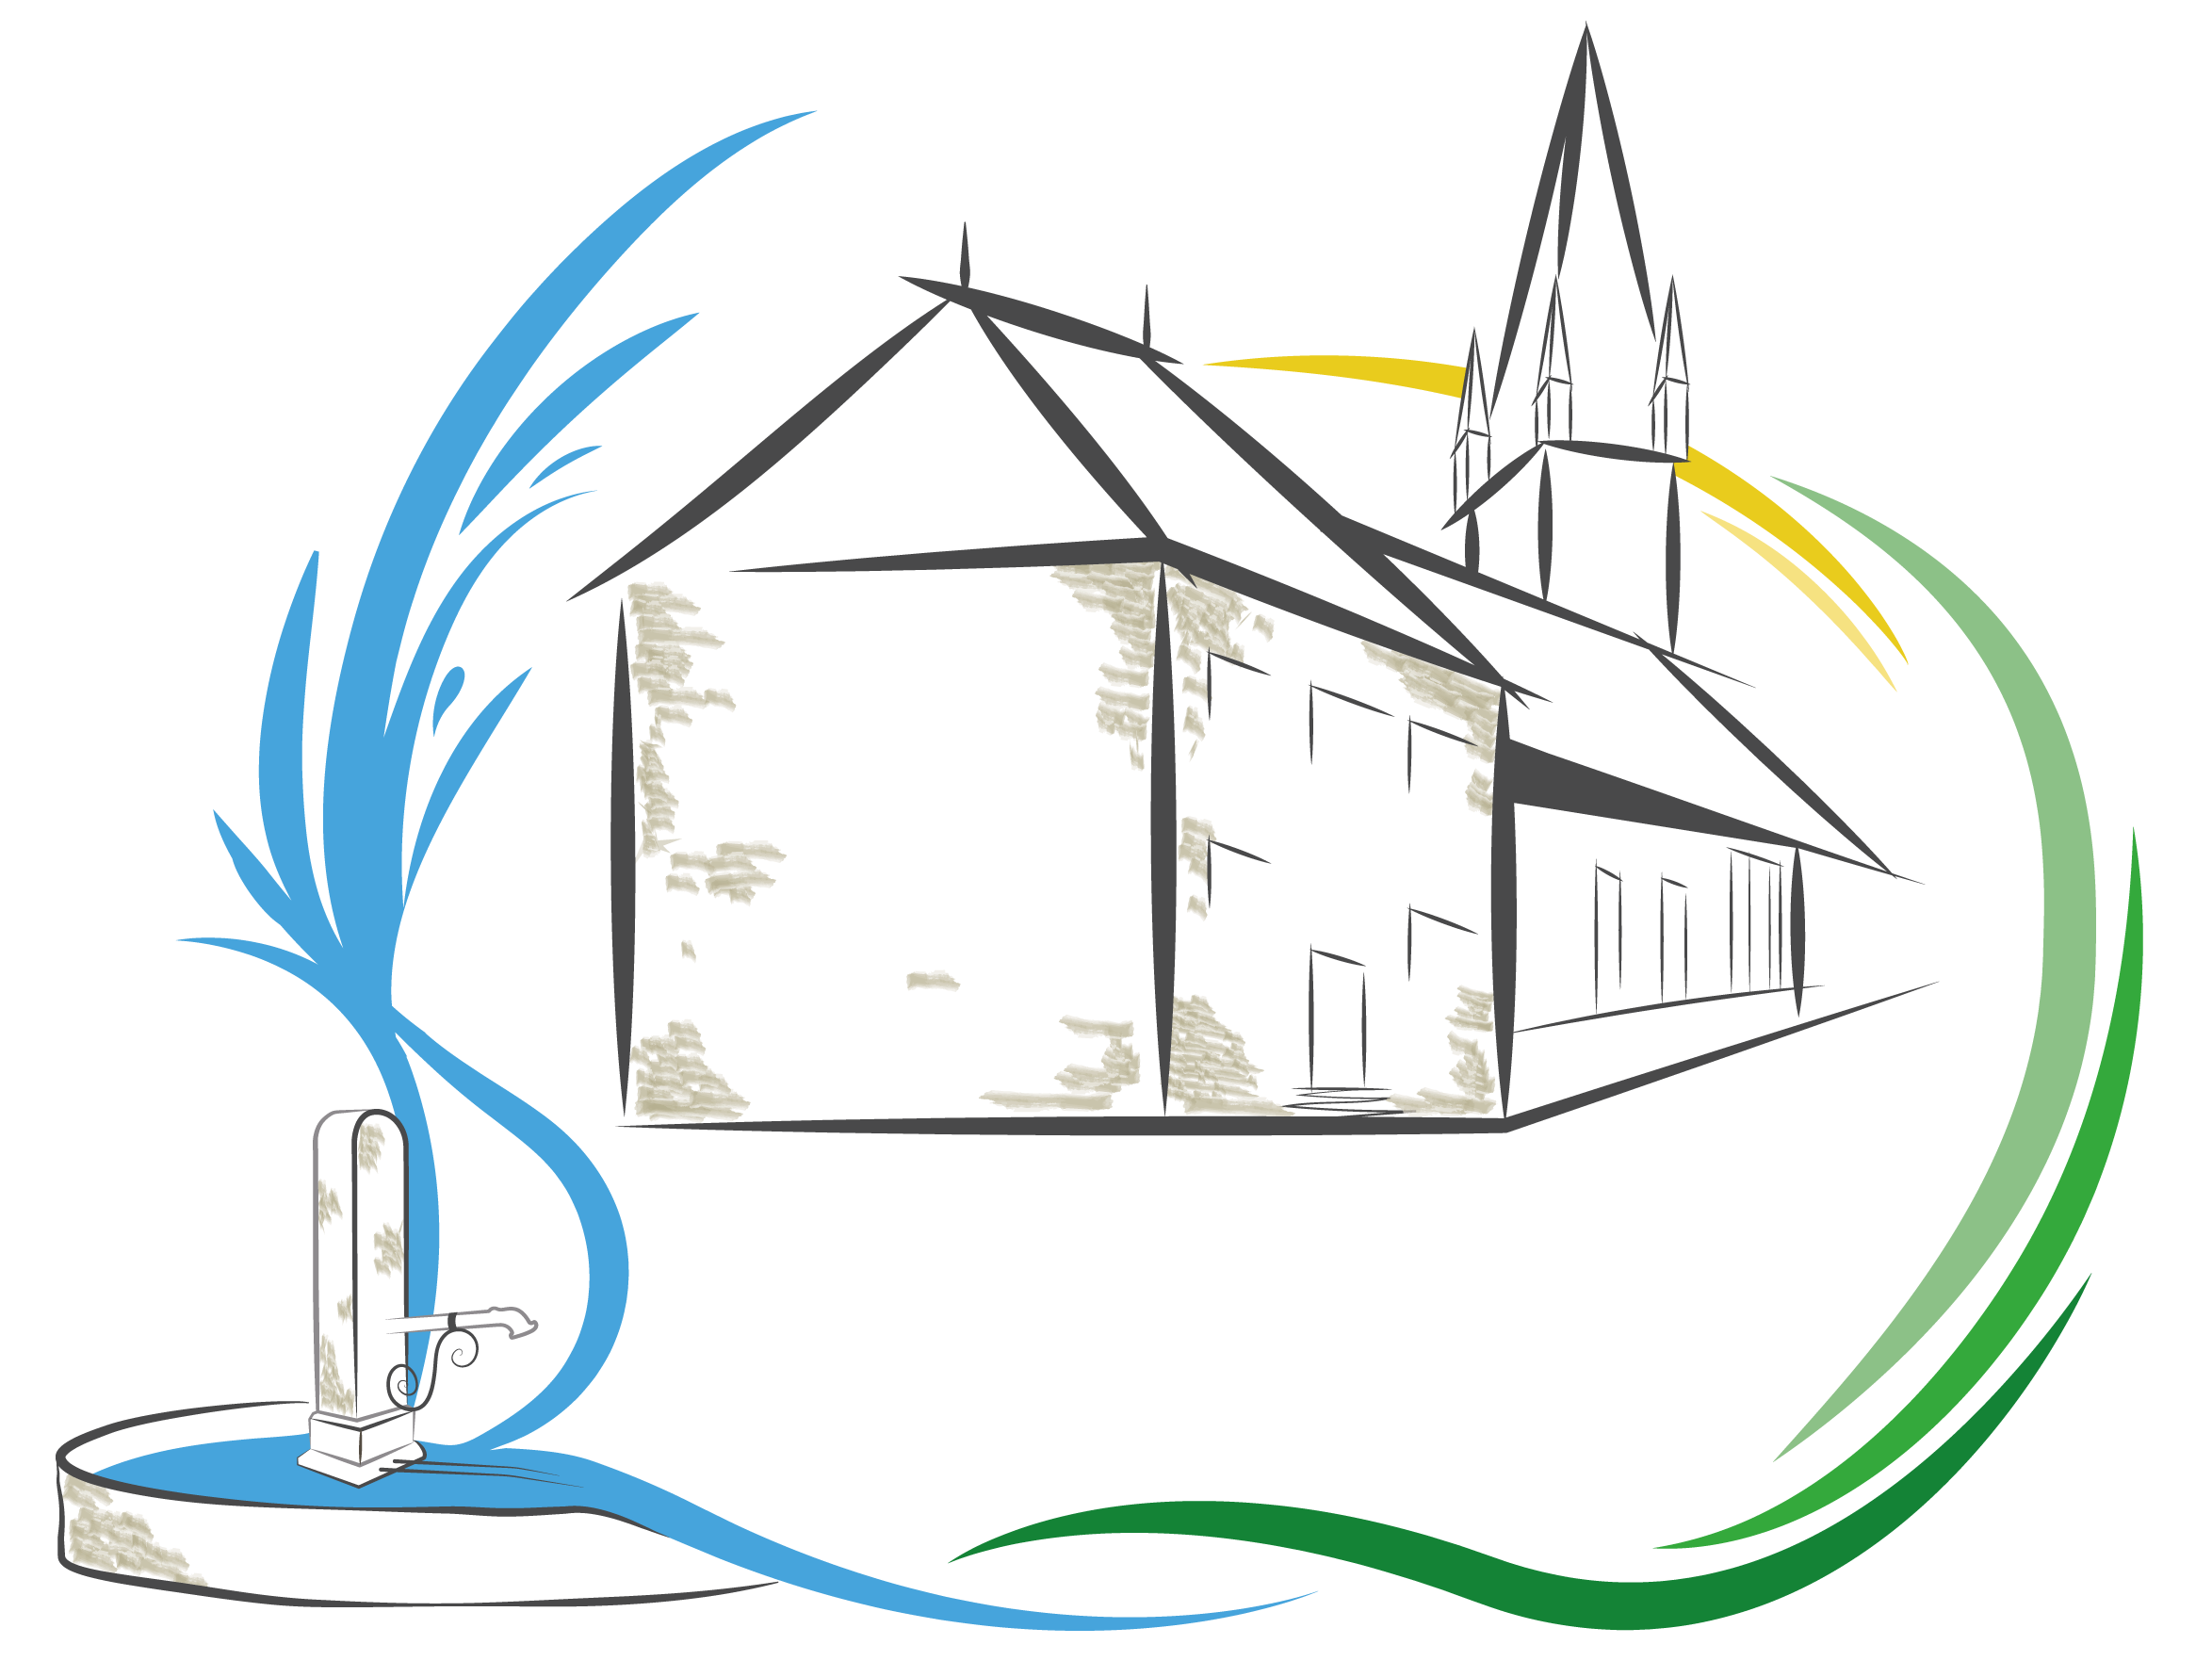 Commune de Dizimieu